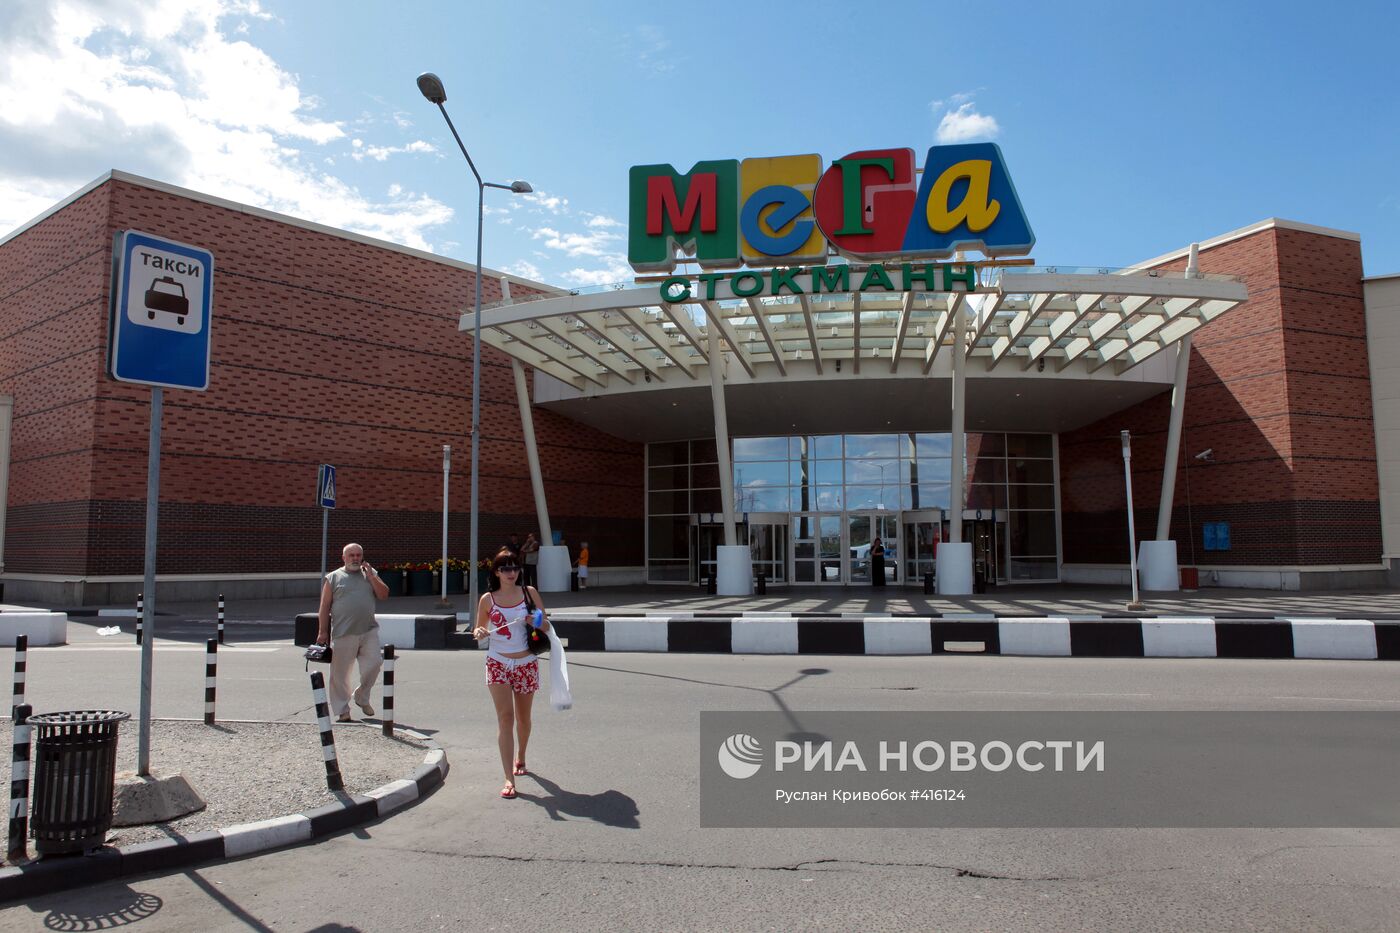 Торговый центр "Мега" в Химках